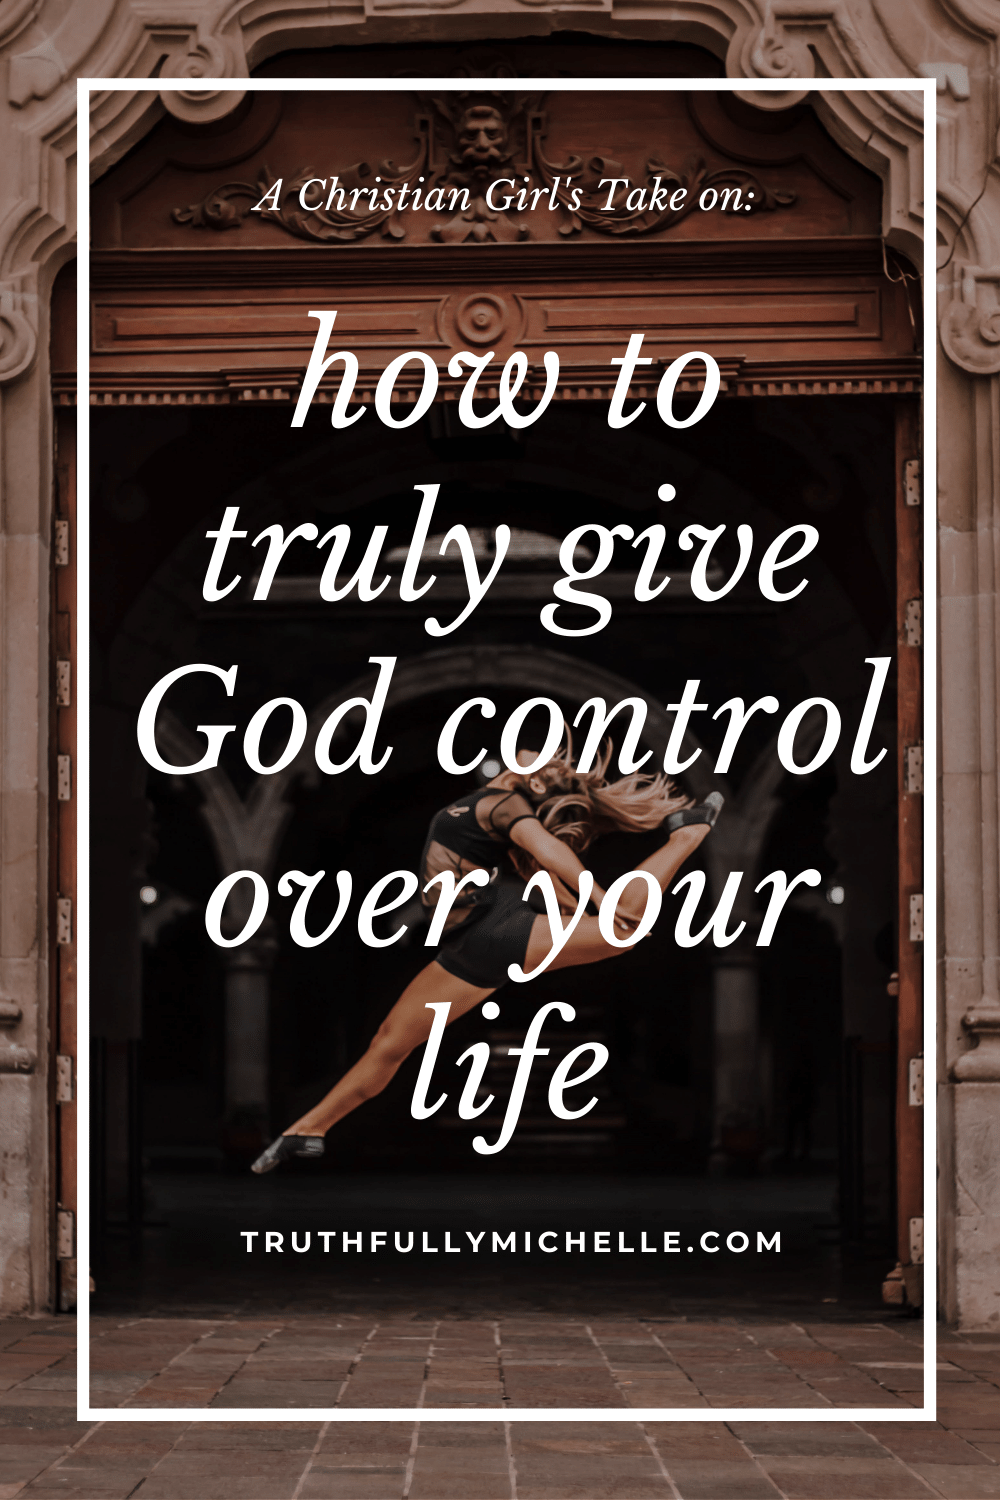 odpuszczanie i pozwalanie Bogu przejąć kontrolę, jak pozwolić Bogu przejąć kontrolę nad twoim życiem, kiedy pozwalasz Bogu przejąć kontrolę, pozwalając Bogu prowadzić, oddając kontrolę Bogu, pozwól Bogu kontrolować twoje życie, pozwalając Bogu przejąć kontrolę, jak dać Bogu kontrolę, Bóg kontroluje moje życie i przeznaczenie, jak całkowicie wierzyć w Boga, jak pozwolić Bogu przejąć kontrolę, jak w pełni zaufać Bogu, jak zaufać Bogu w trudnych czasach duchowa inspiracja i zachęta